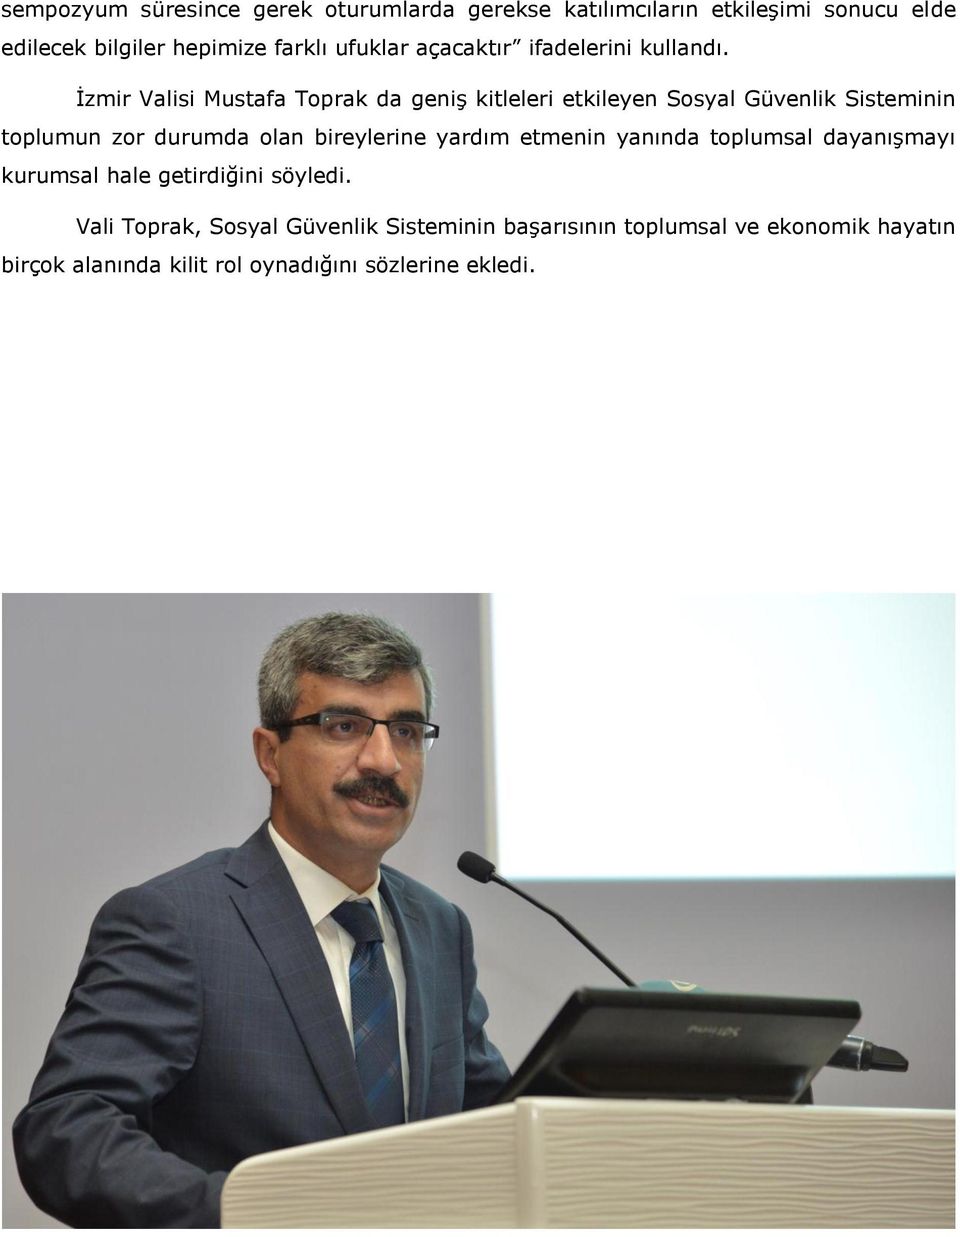 İzmir Valisi Mustafa Toprak da geniş kitleleri etkileyen Sosyal Güvenlik Sisteminin toplumun zor durumda olan bireylerine